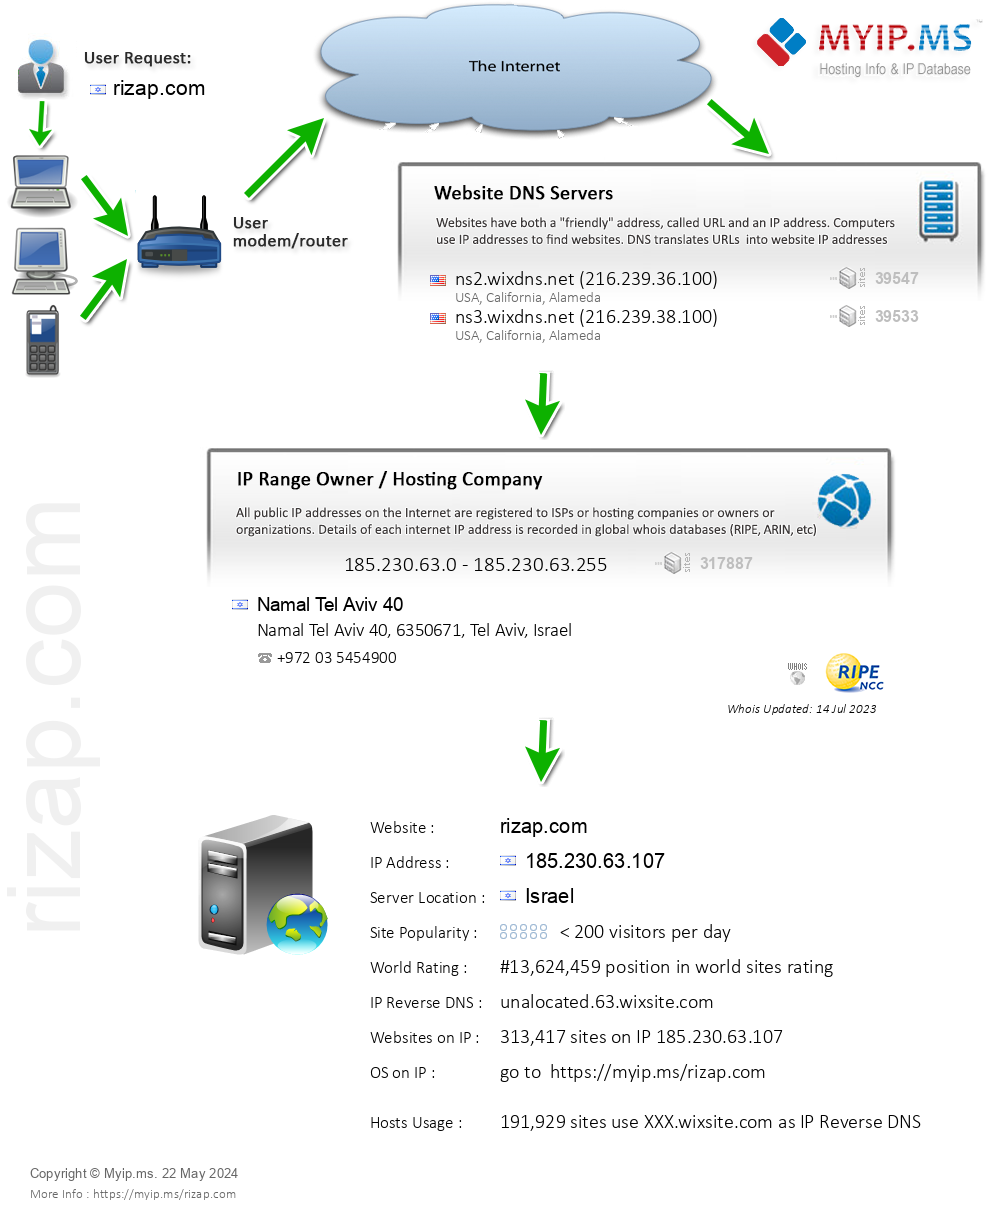 Rizap.com - Website Hosting Visual IP Diagram